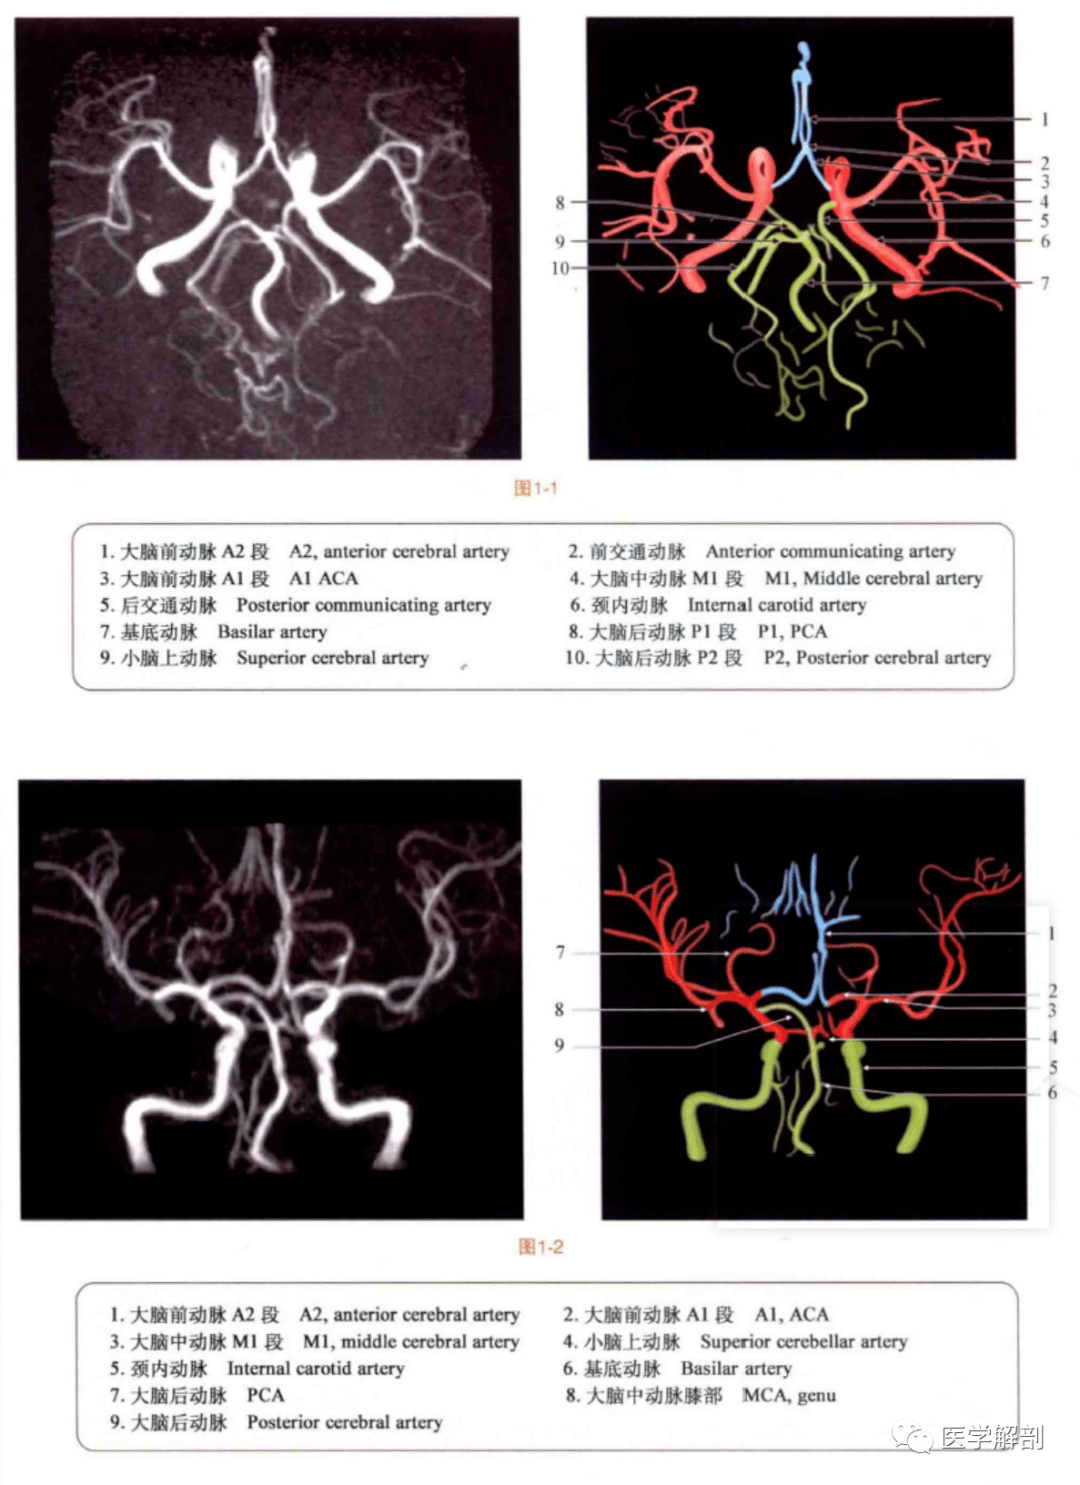 断层图谱 | mra磁共振血管造影对照解剖图谱